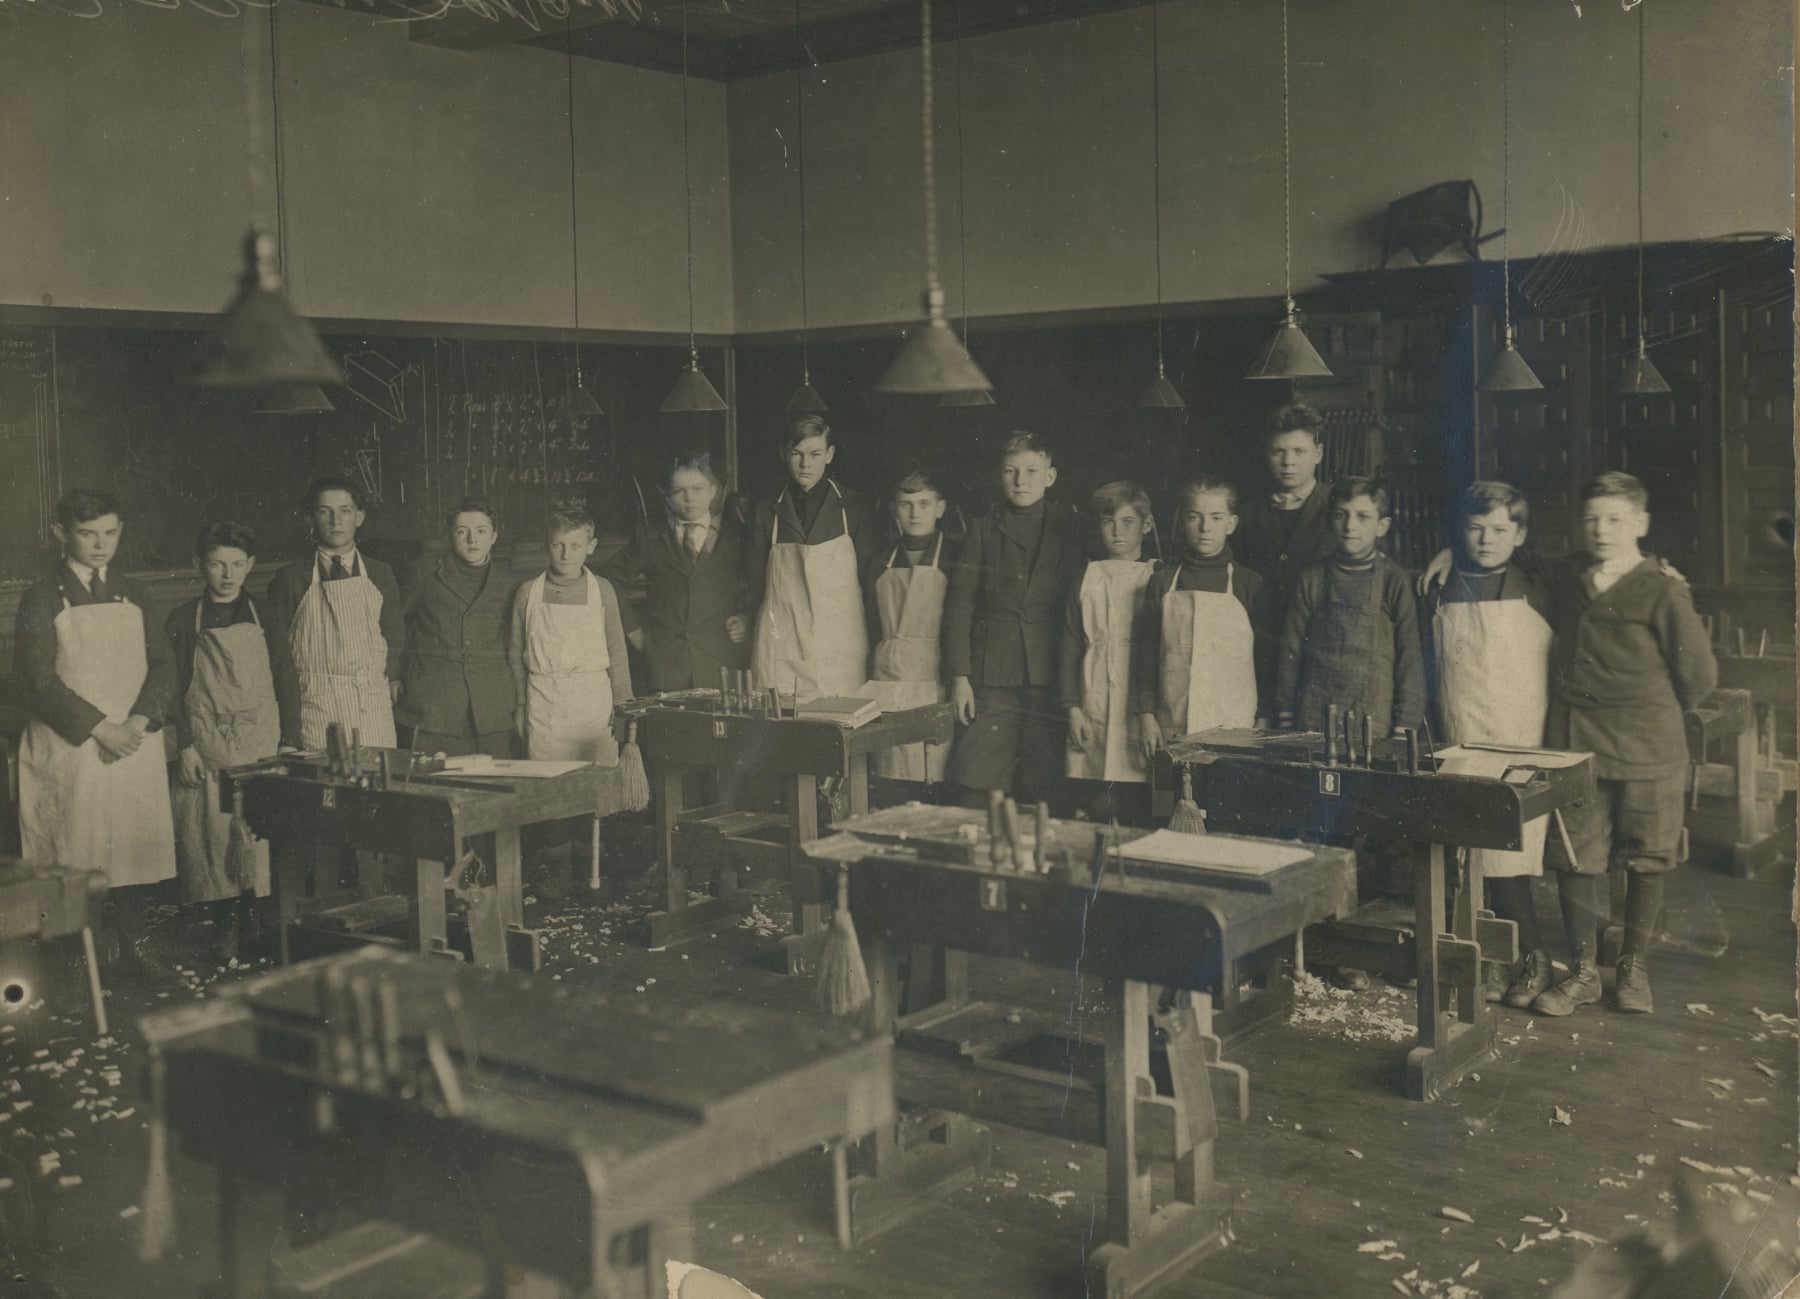 Wood shop in the Toronto School Board, 1920.